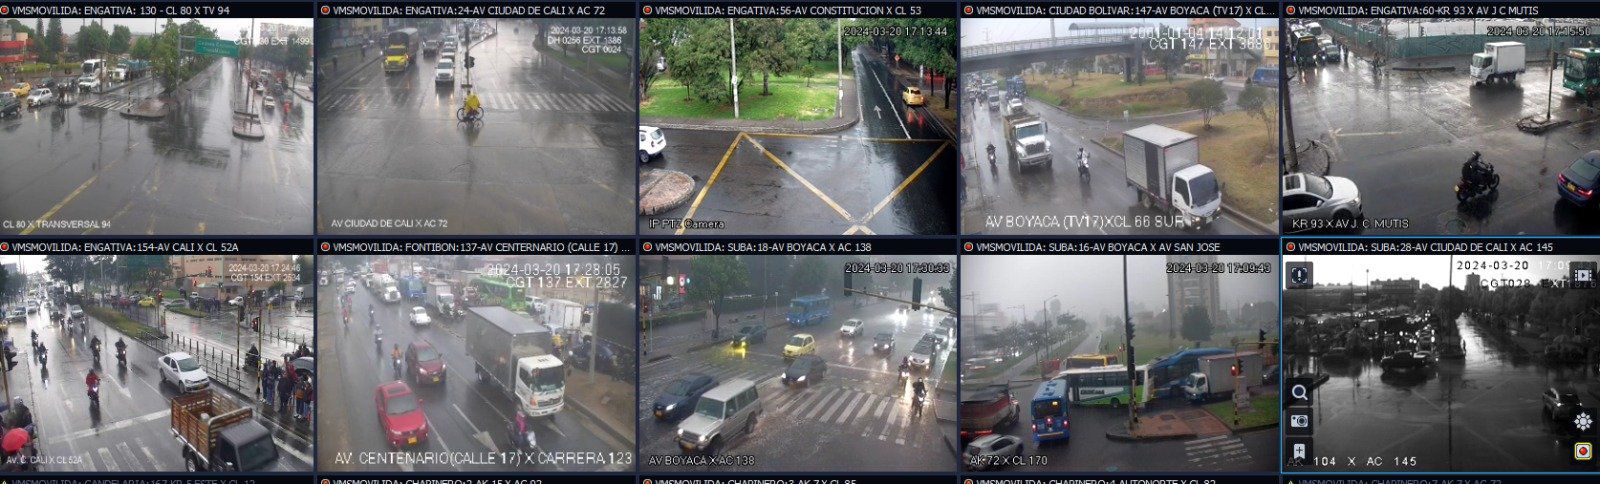 En Bogotá, cada día se accidentan 16 personas en accidentes de tránsito - crédito @BogotaTransito